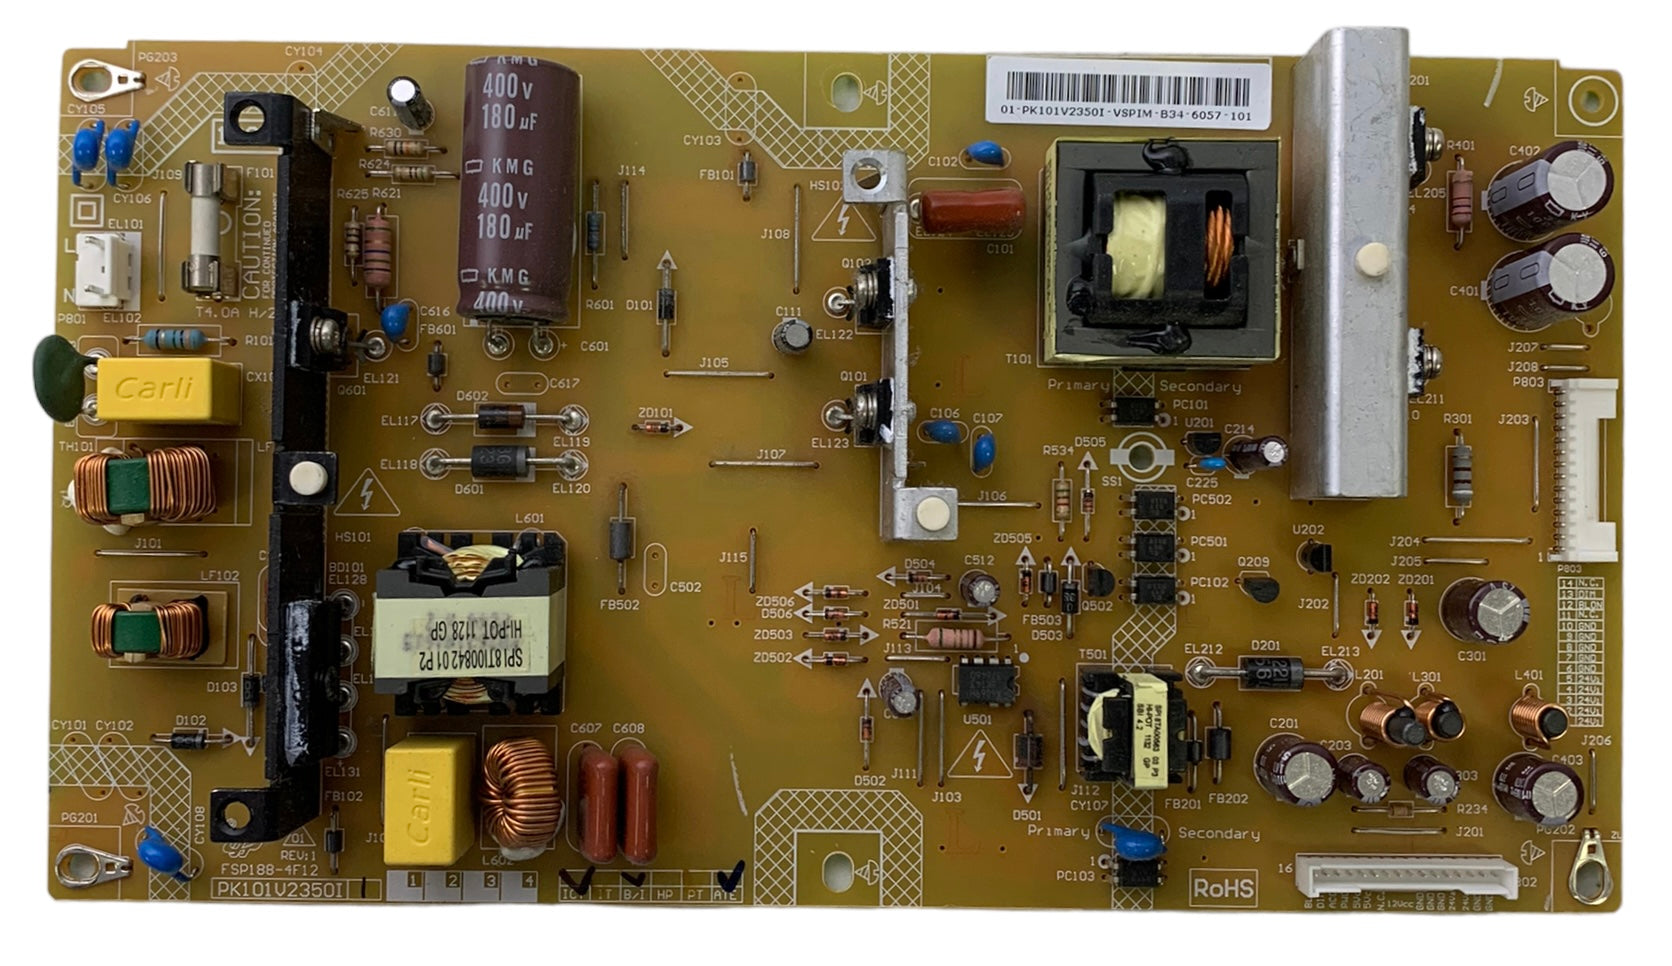 Toshiba 75023542 (PK101V2350I, FSP188-4F12) Power Supply Unit